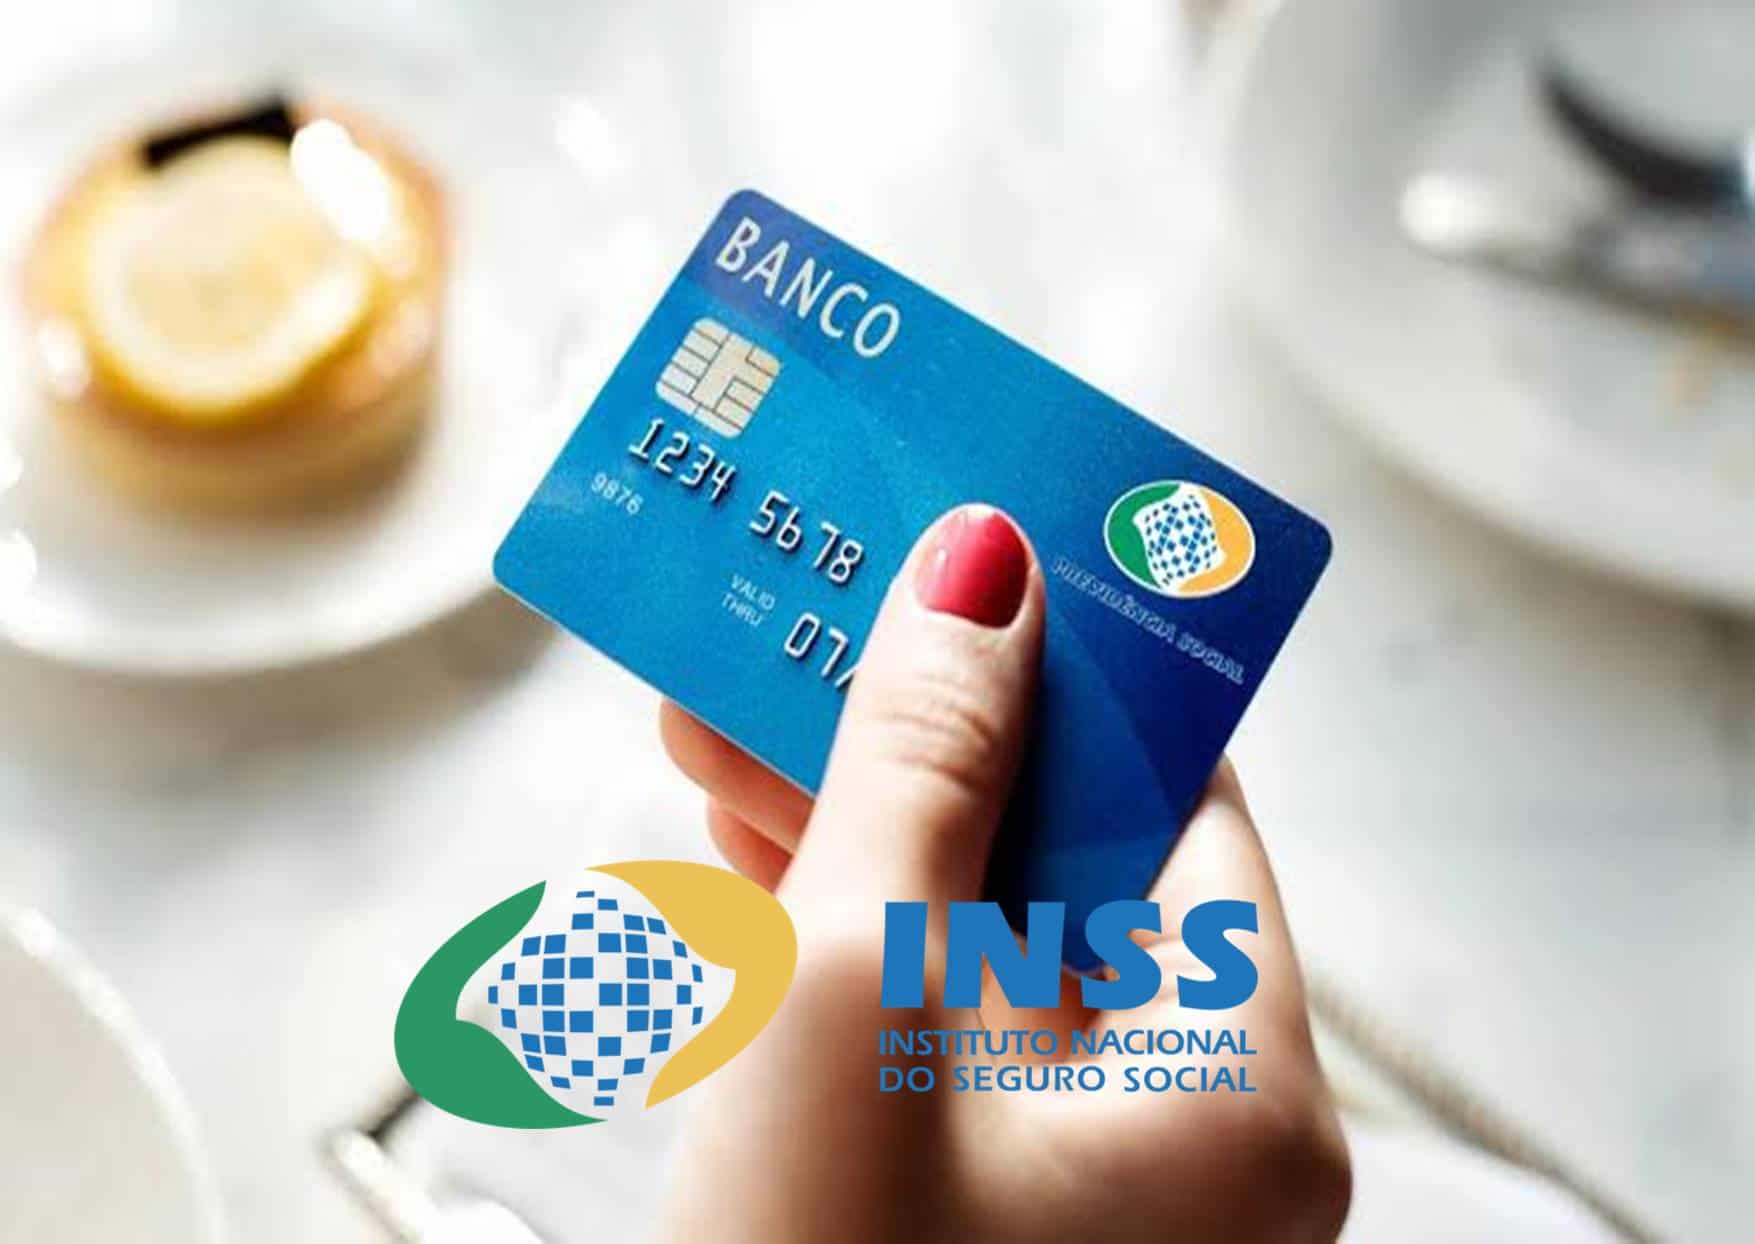 Bancos para aposentados do INSS fazer Cartão de Crédito mesmo com nome sujo